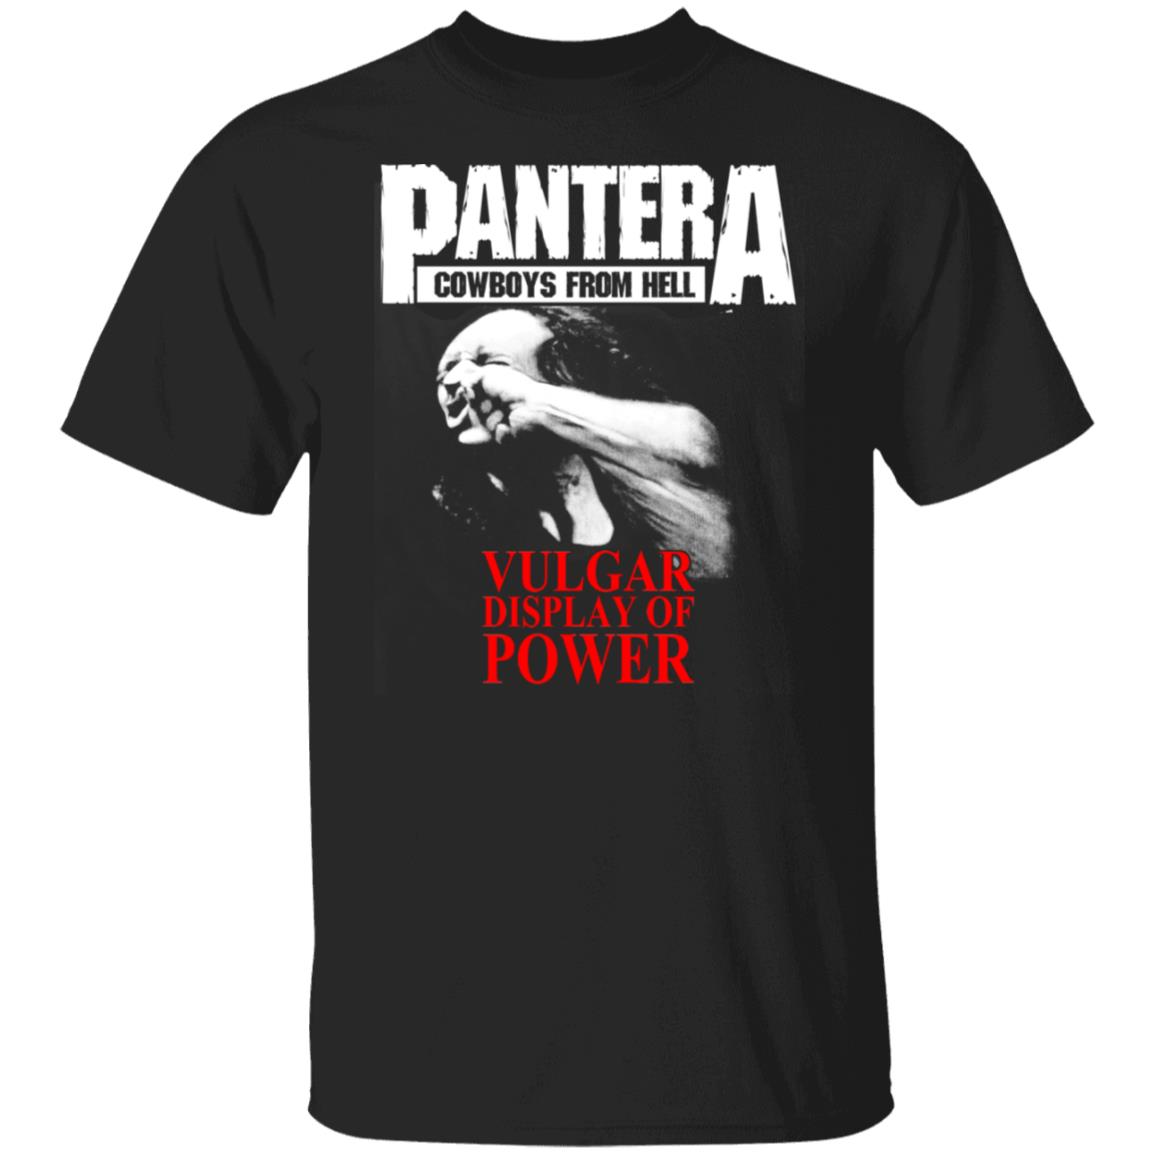 Pantera Cowboys from Hell T-Shirt